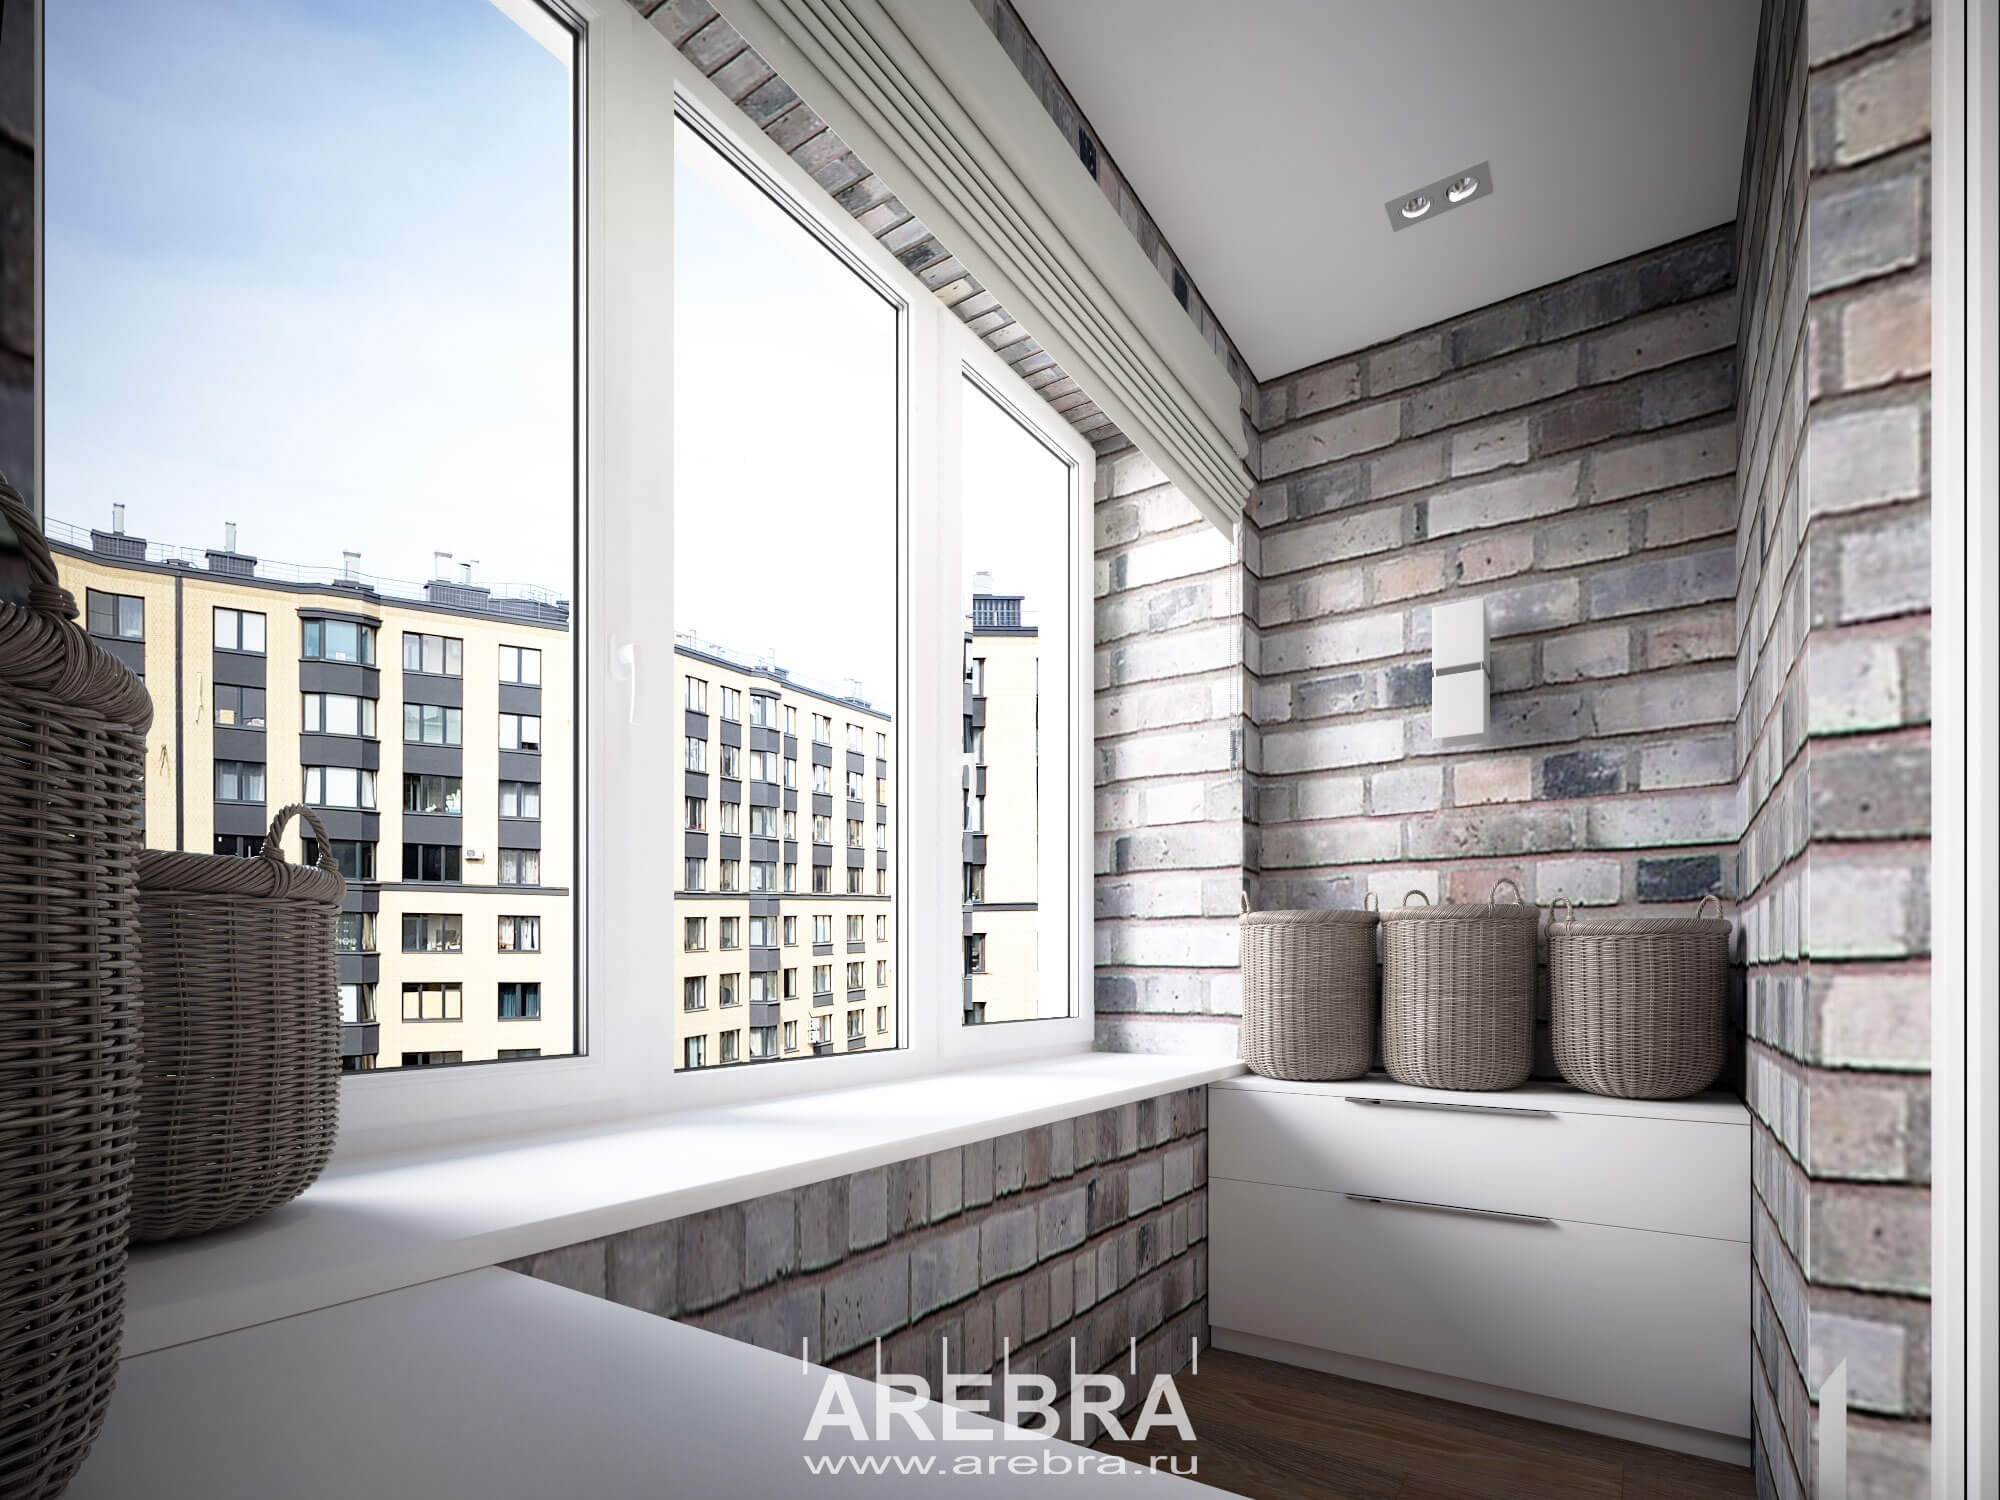 Дизайн проект интерьера квартиры общей площадью 69,7м2, г. Санкт-Петербург, ул. Малая Бухарестская, д12